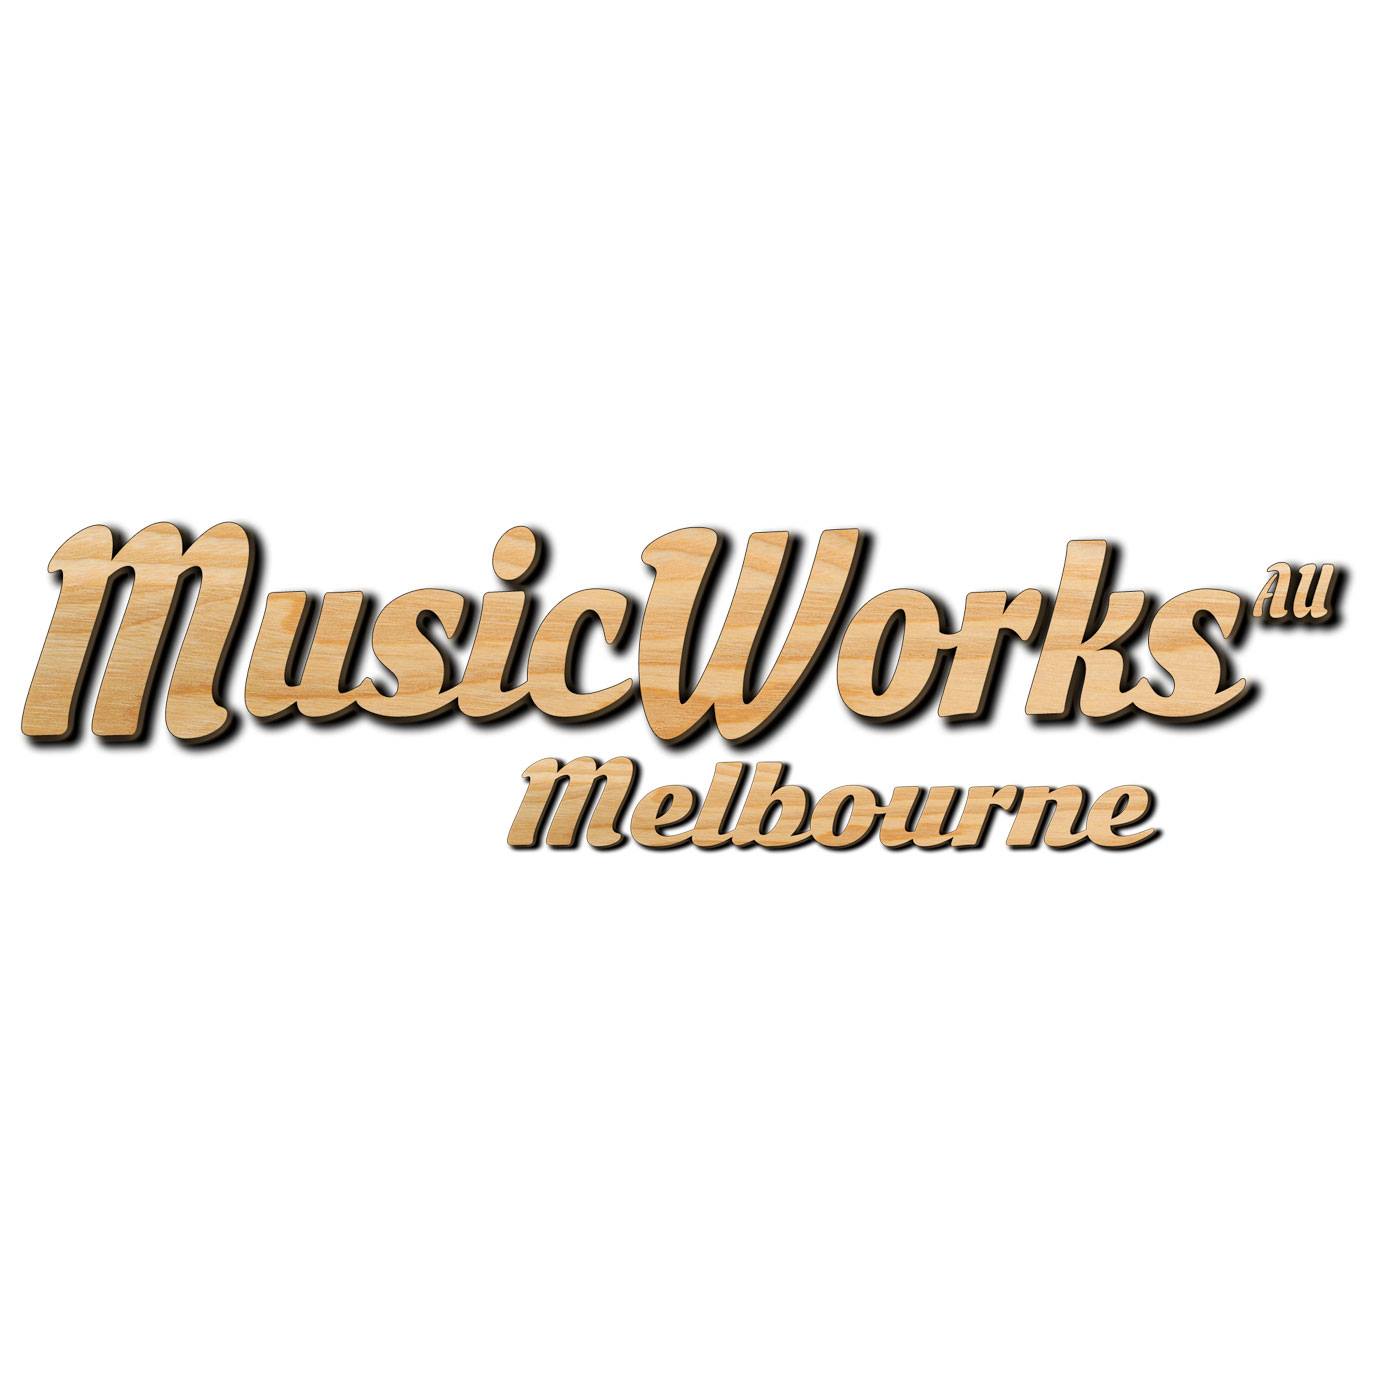 MusicWorks Logo